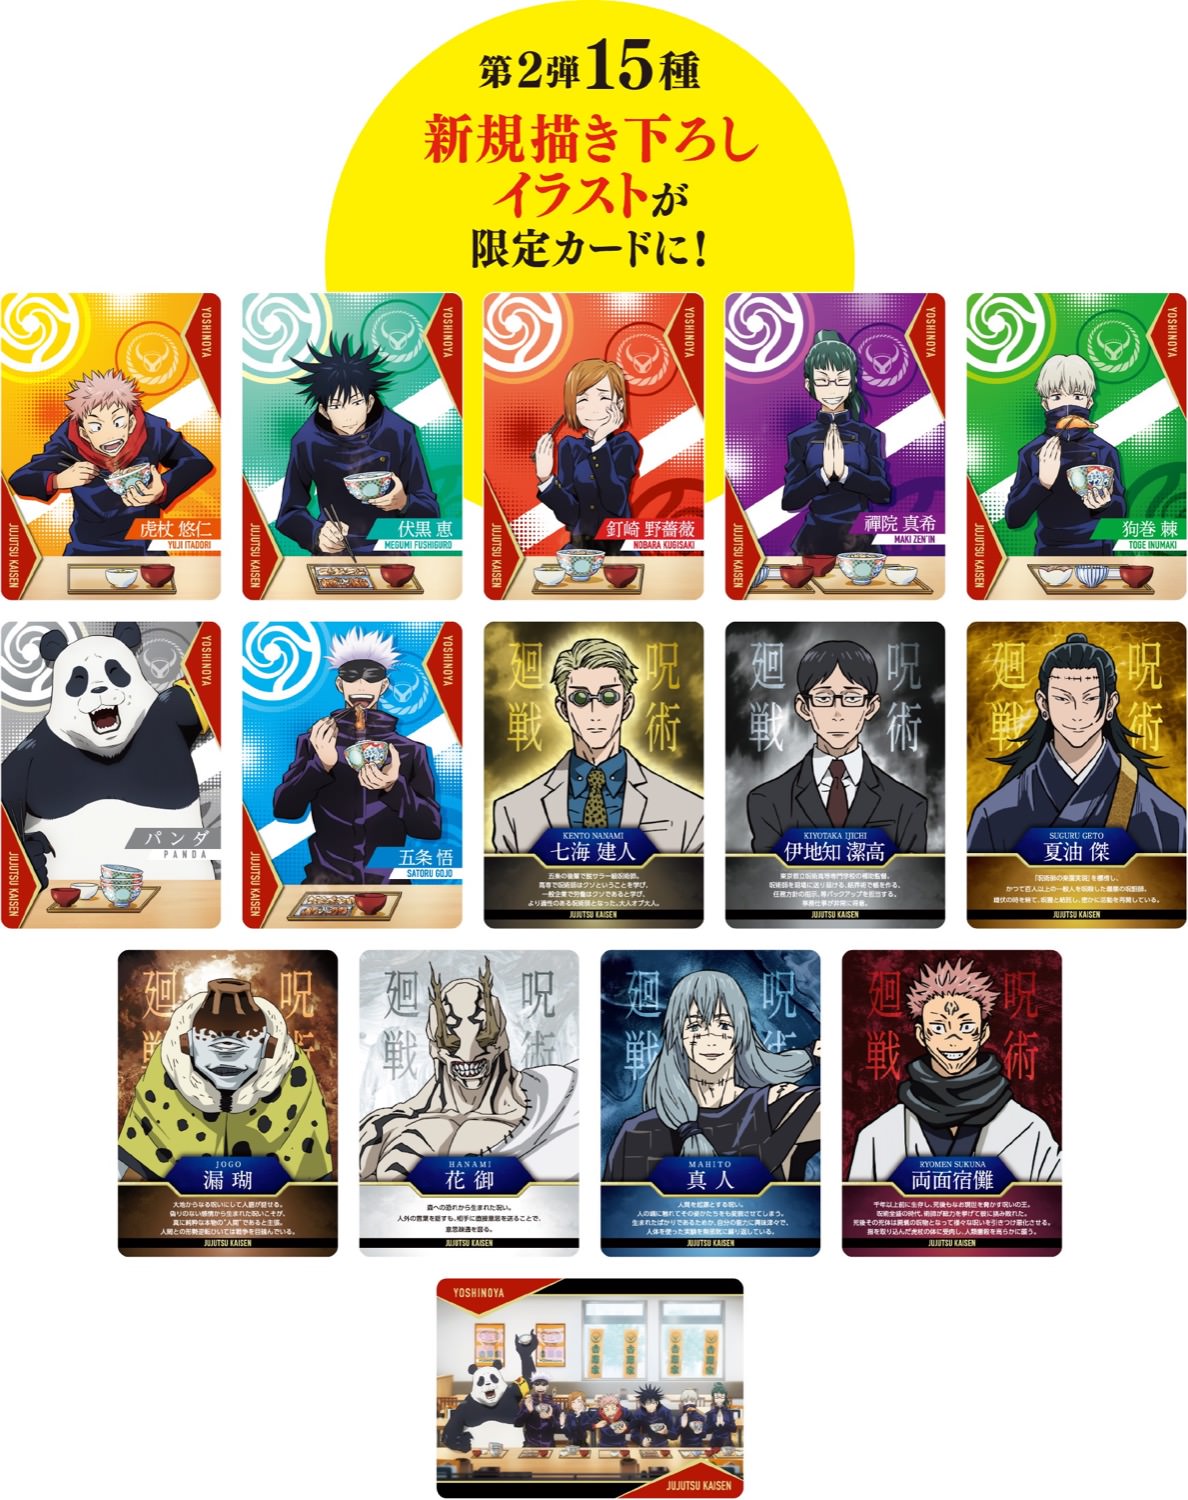 呪術廻戦 × 吉野家 コラボ第2弾 3月8日より限定カードプレゼント!